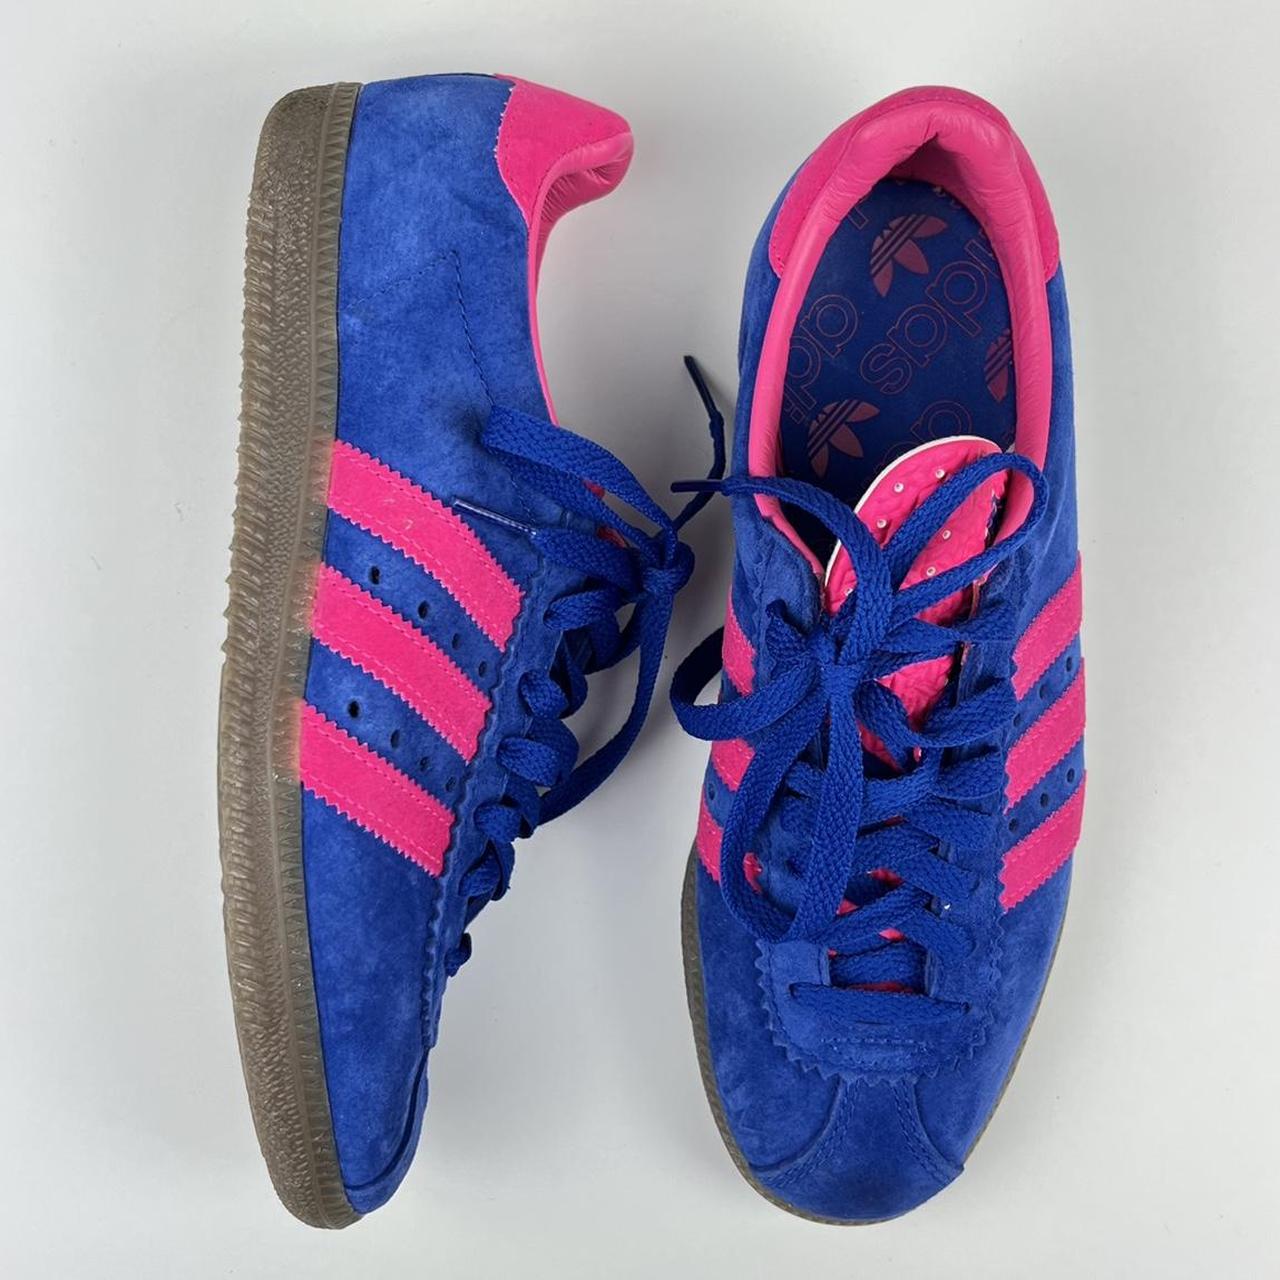 Adidas Bermuda Blue / Pink, US 5 (Mns), UK 4.5...